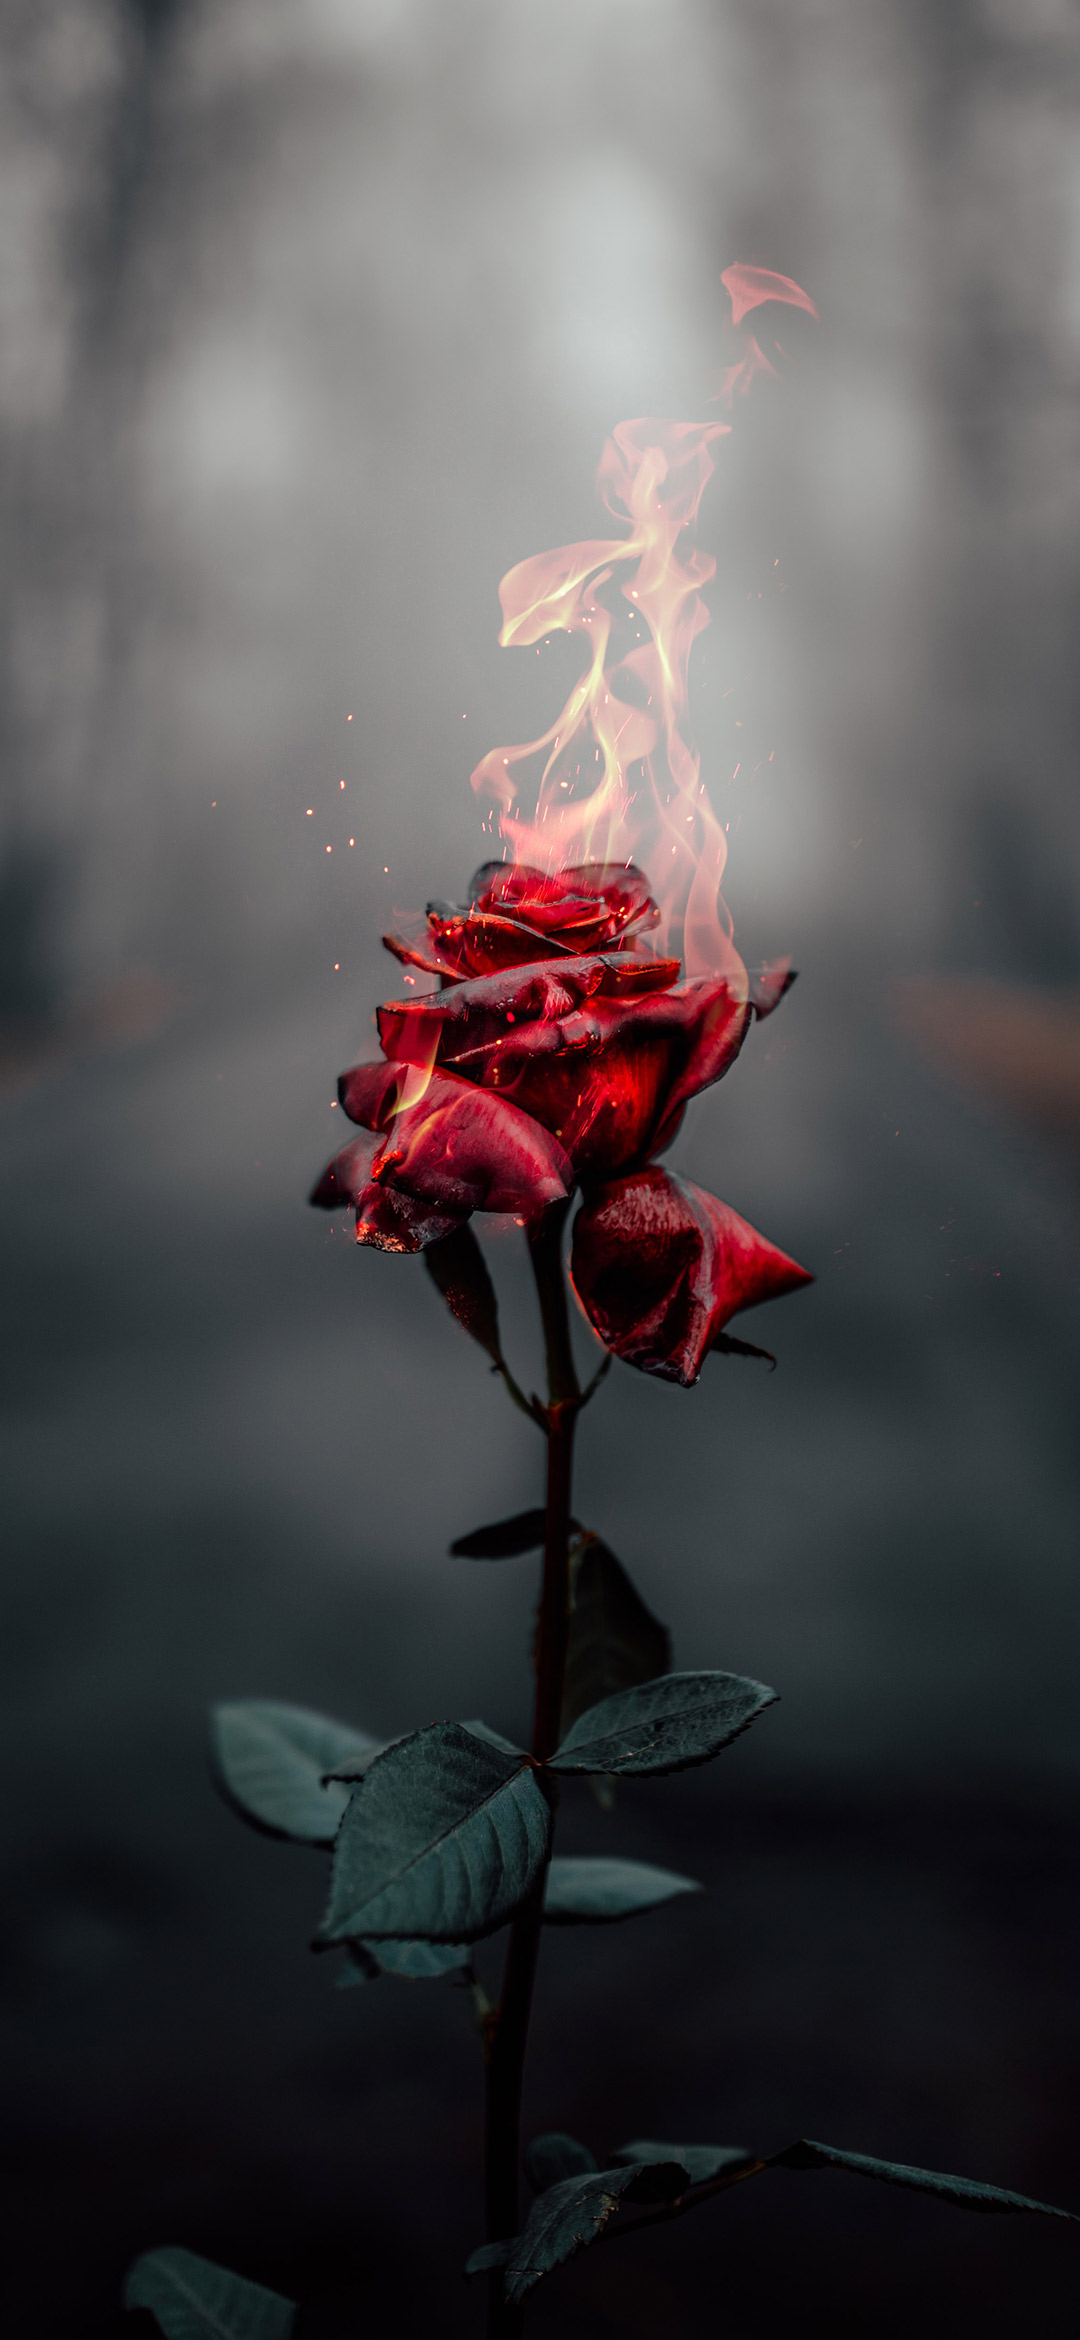 خلفية الوردة الحمراء الملتهبة في ظلام الليل الدامس